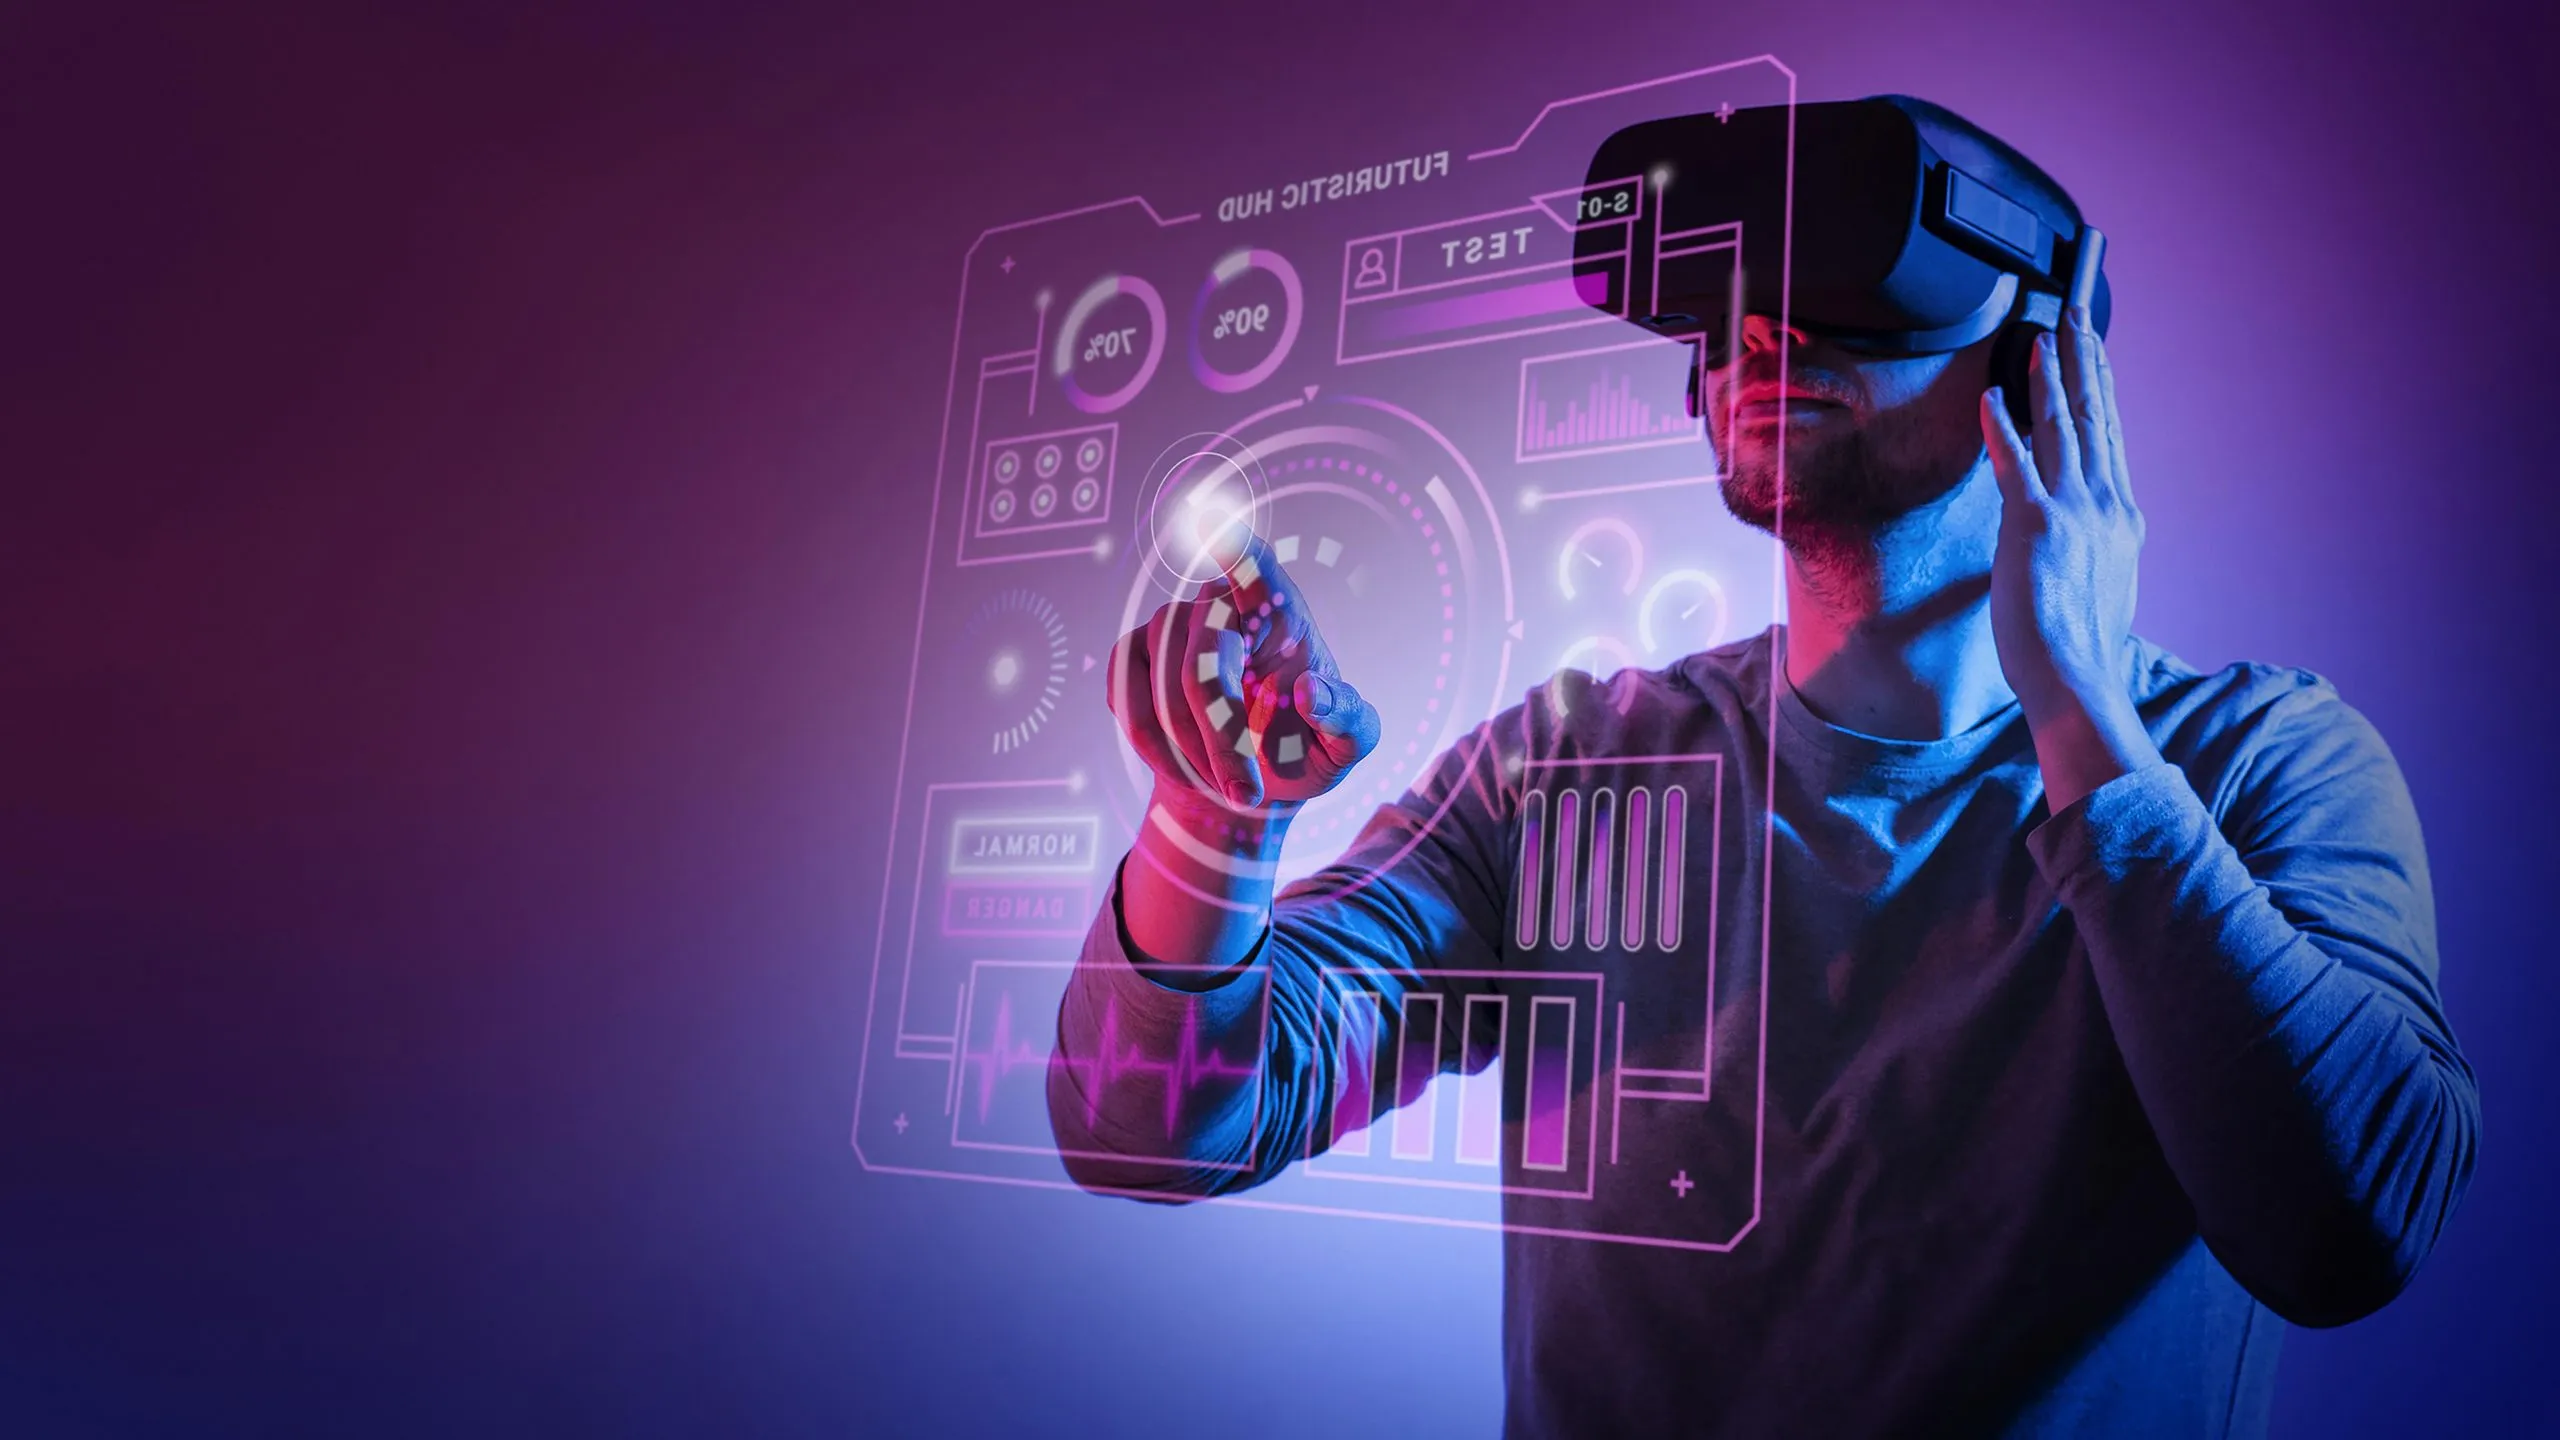 图片展示一位男士戴着虚拟现实头盔，正用手指触碰前方虚拟的交互界面，背景为紫色调，科技感十足。